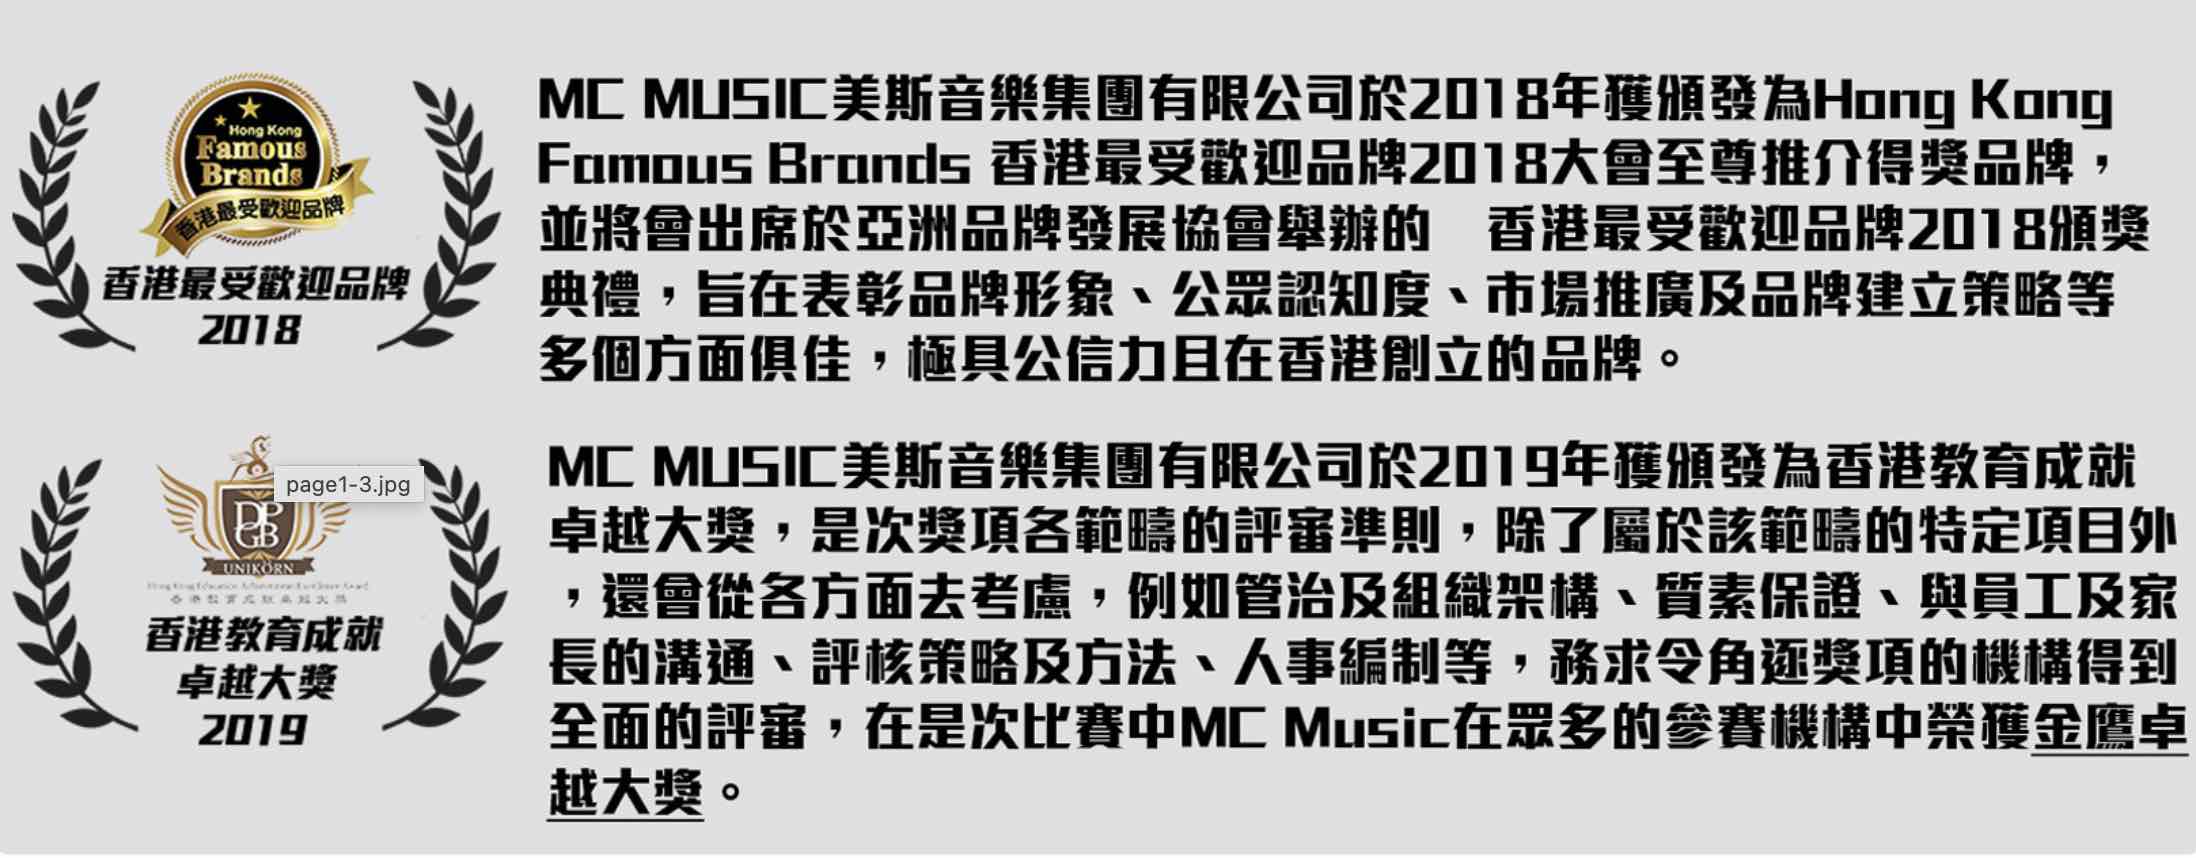 美斯音樂學院MC Music的特許經營香港區加盟店項目5